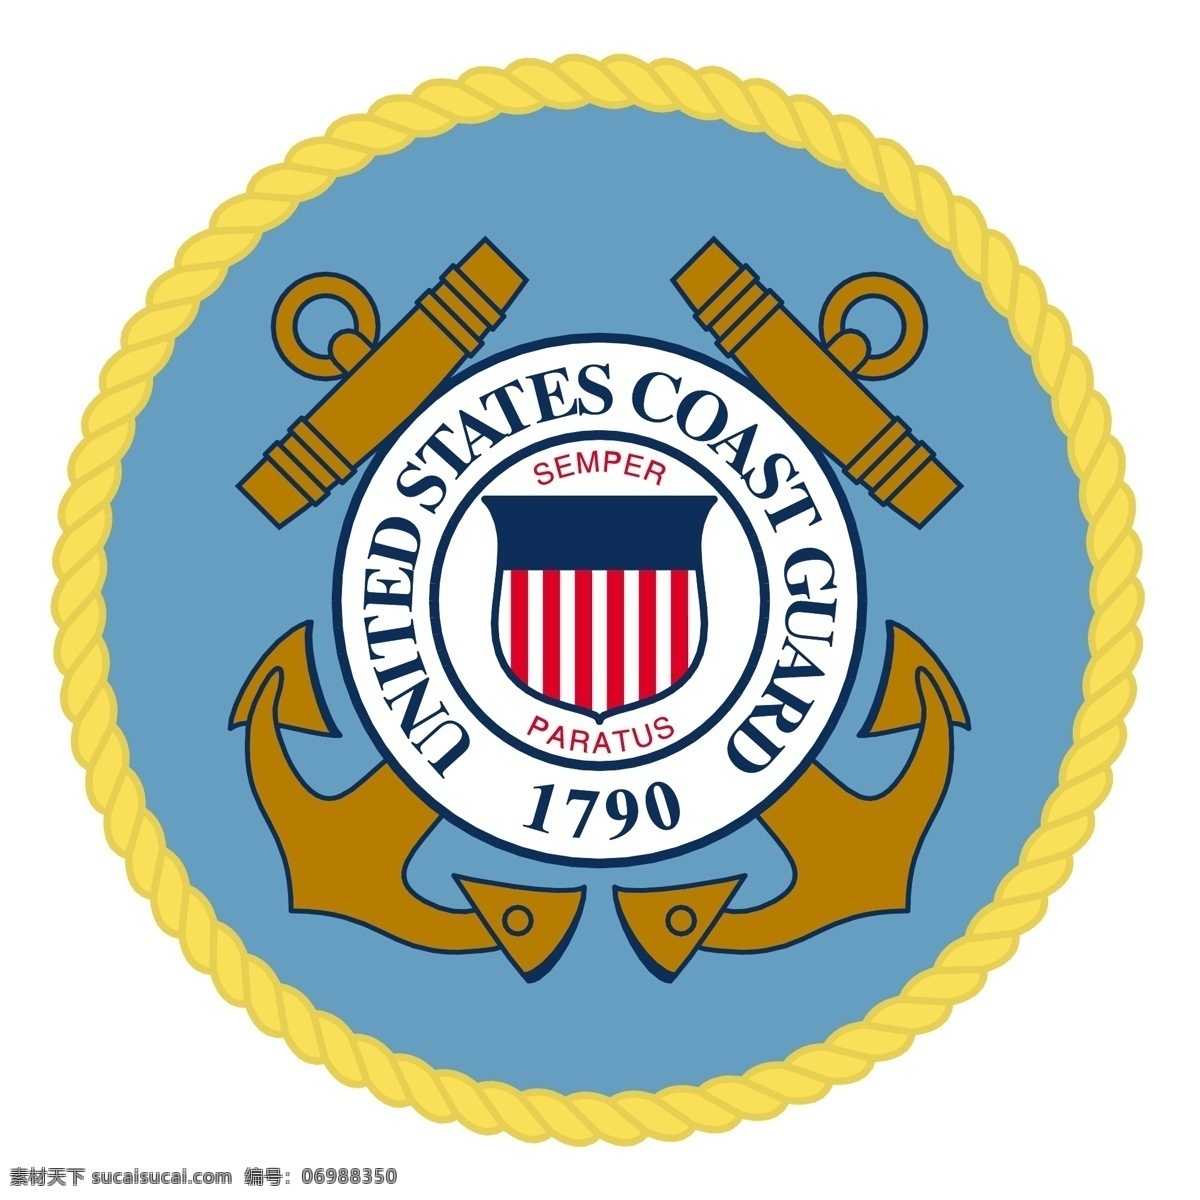 美国 海岸 警卫队 岸 联合的 警卫 状态 矢量图 其他矢量图